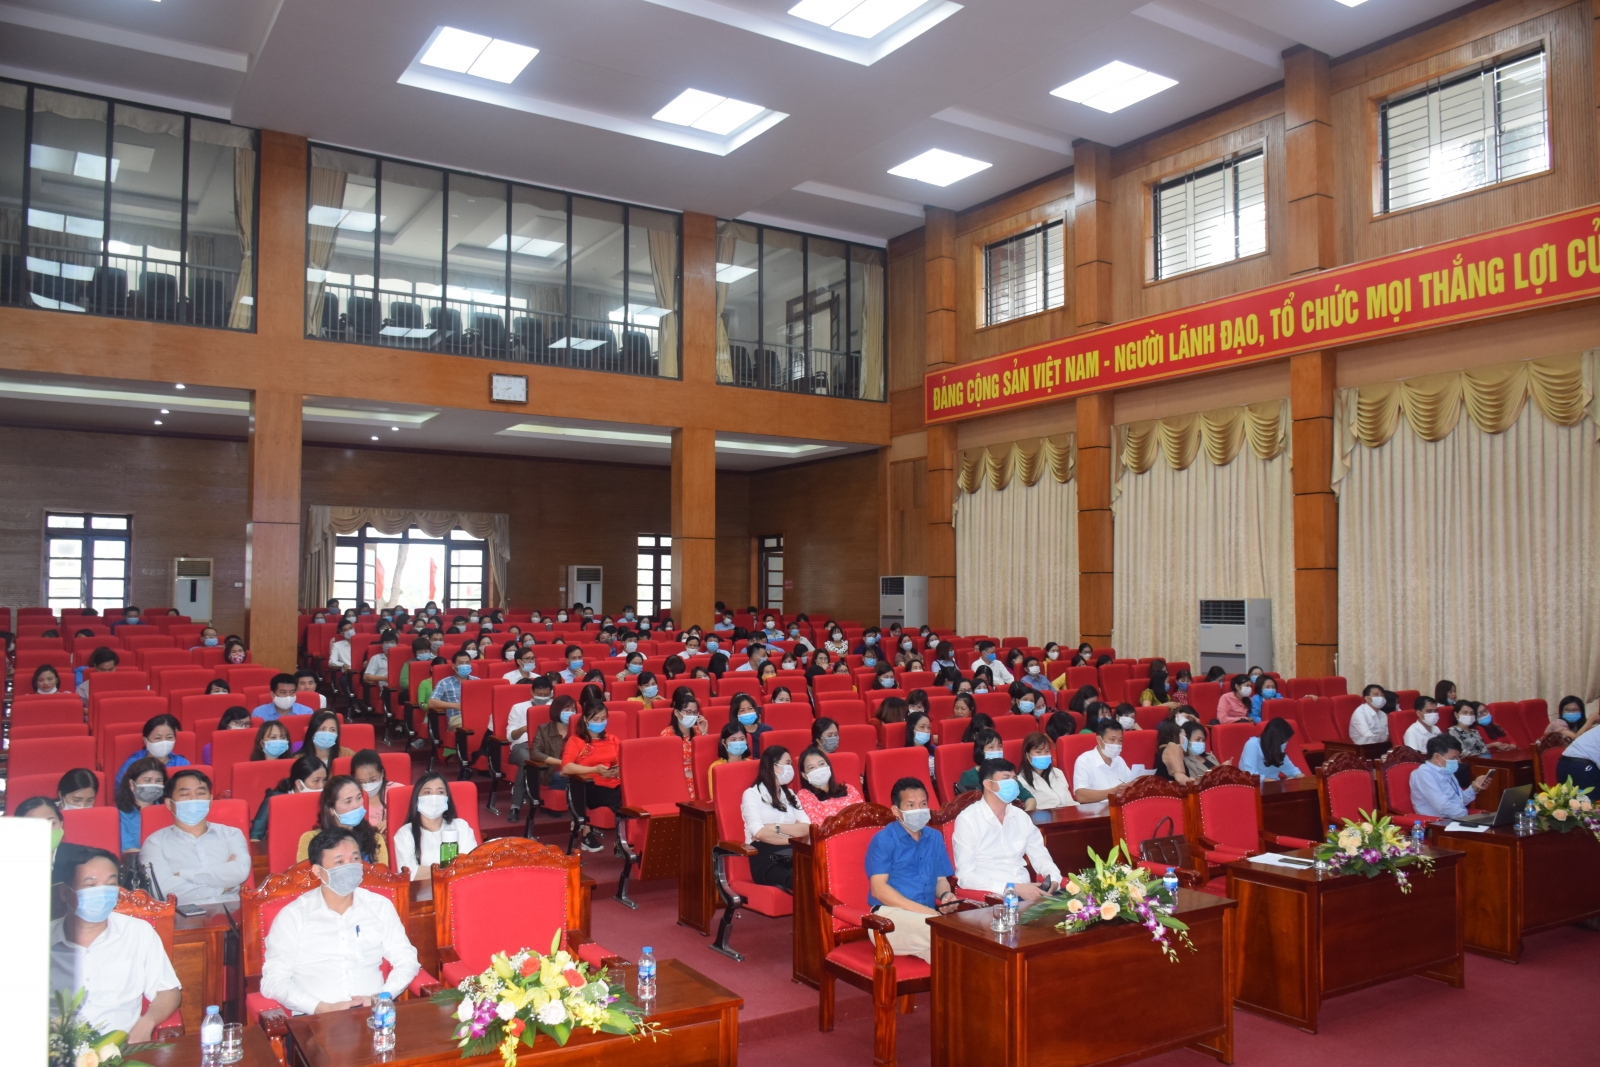 Bắc Giang: 120 giáo viên tiểu học đạt danh hiệu chủ nhiệm lớp giỏi cấp tỉnh